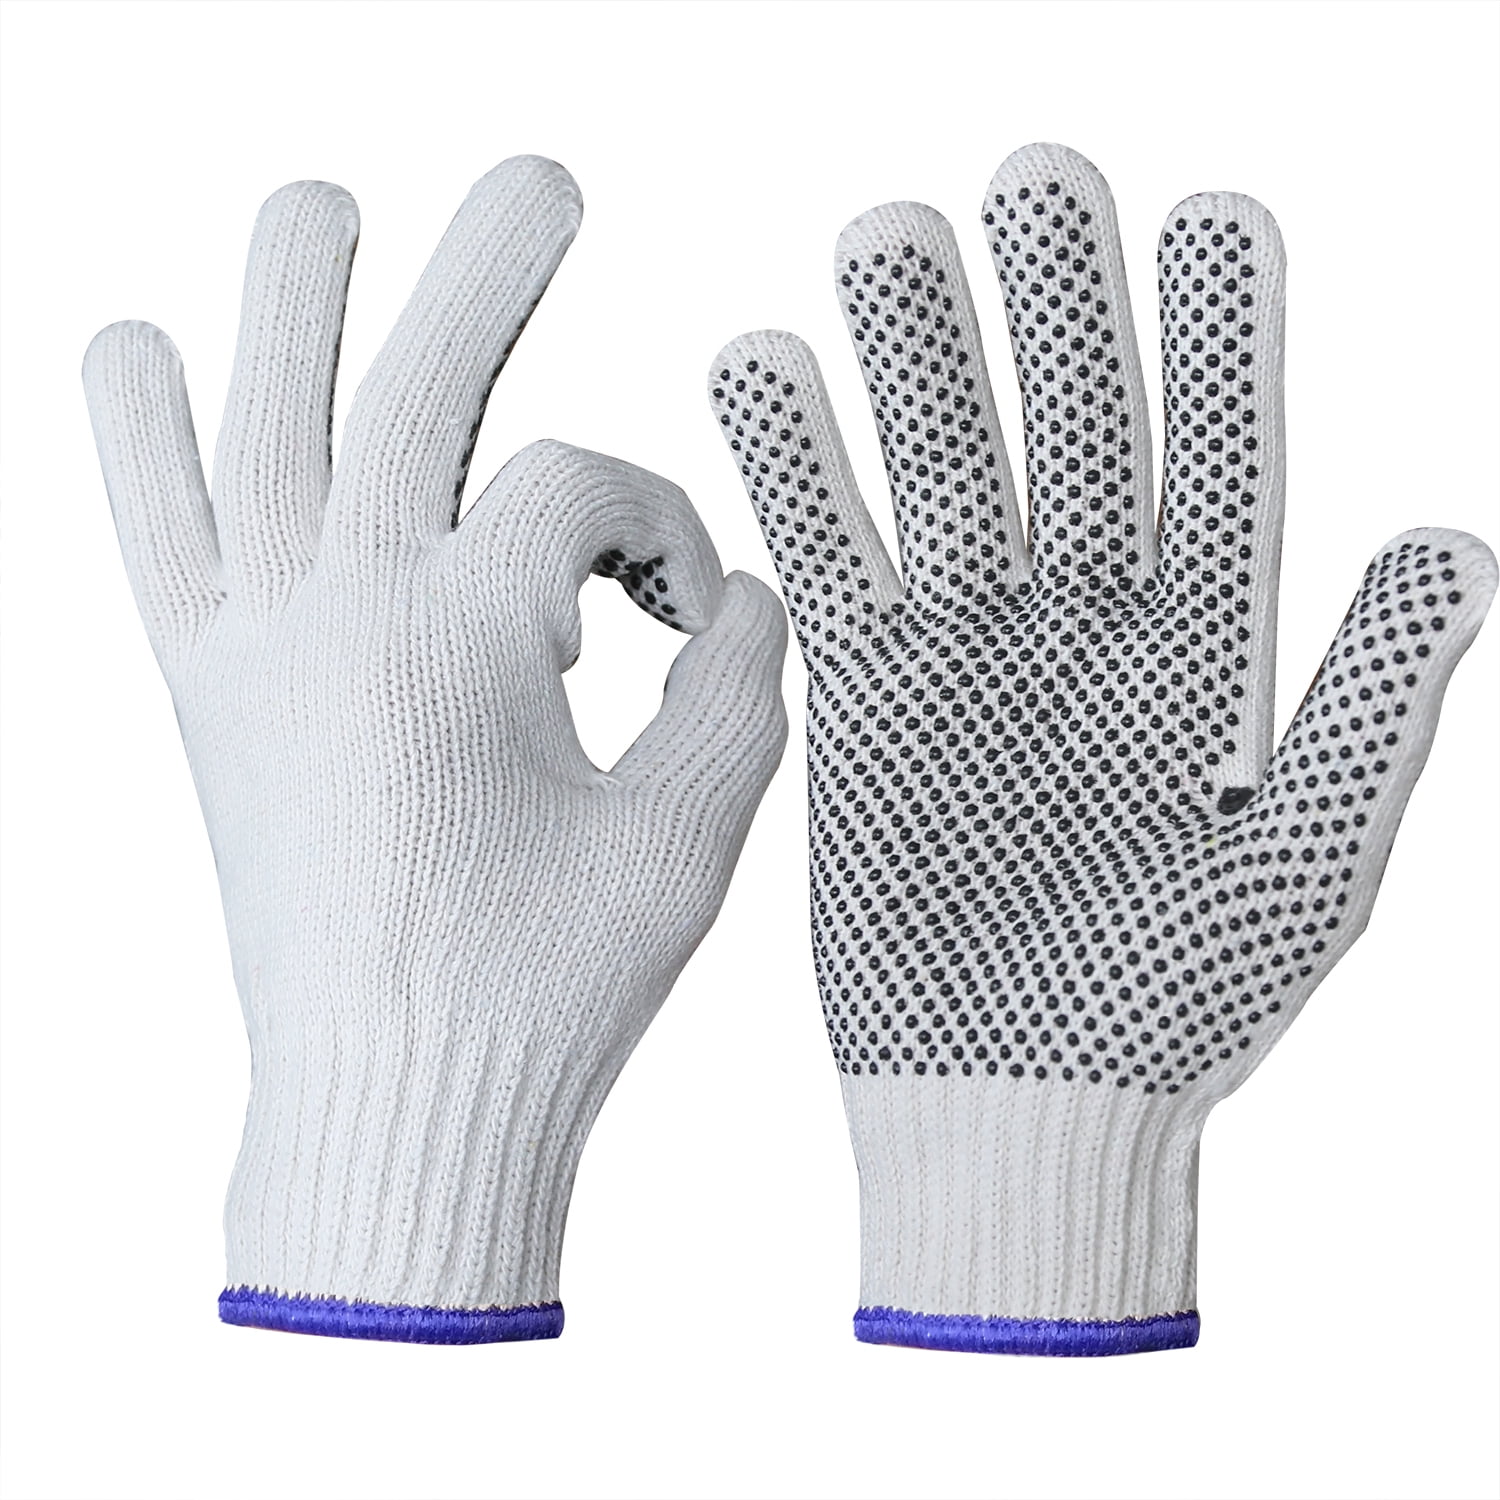 1 Pair PVC Dot HEAVY DUTY Cotton Work PUNCTURE RESISTANT Gloves Large XL 